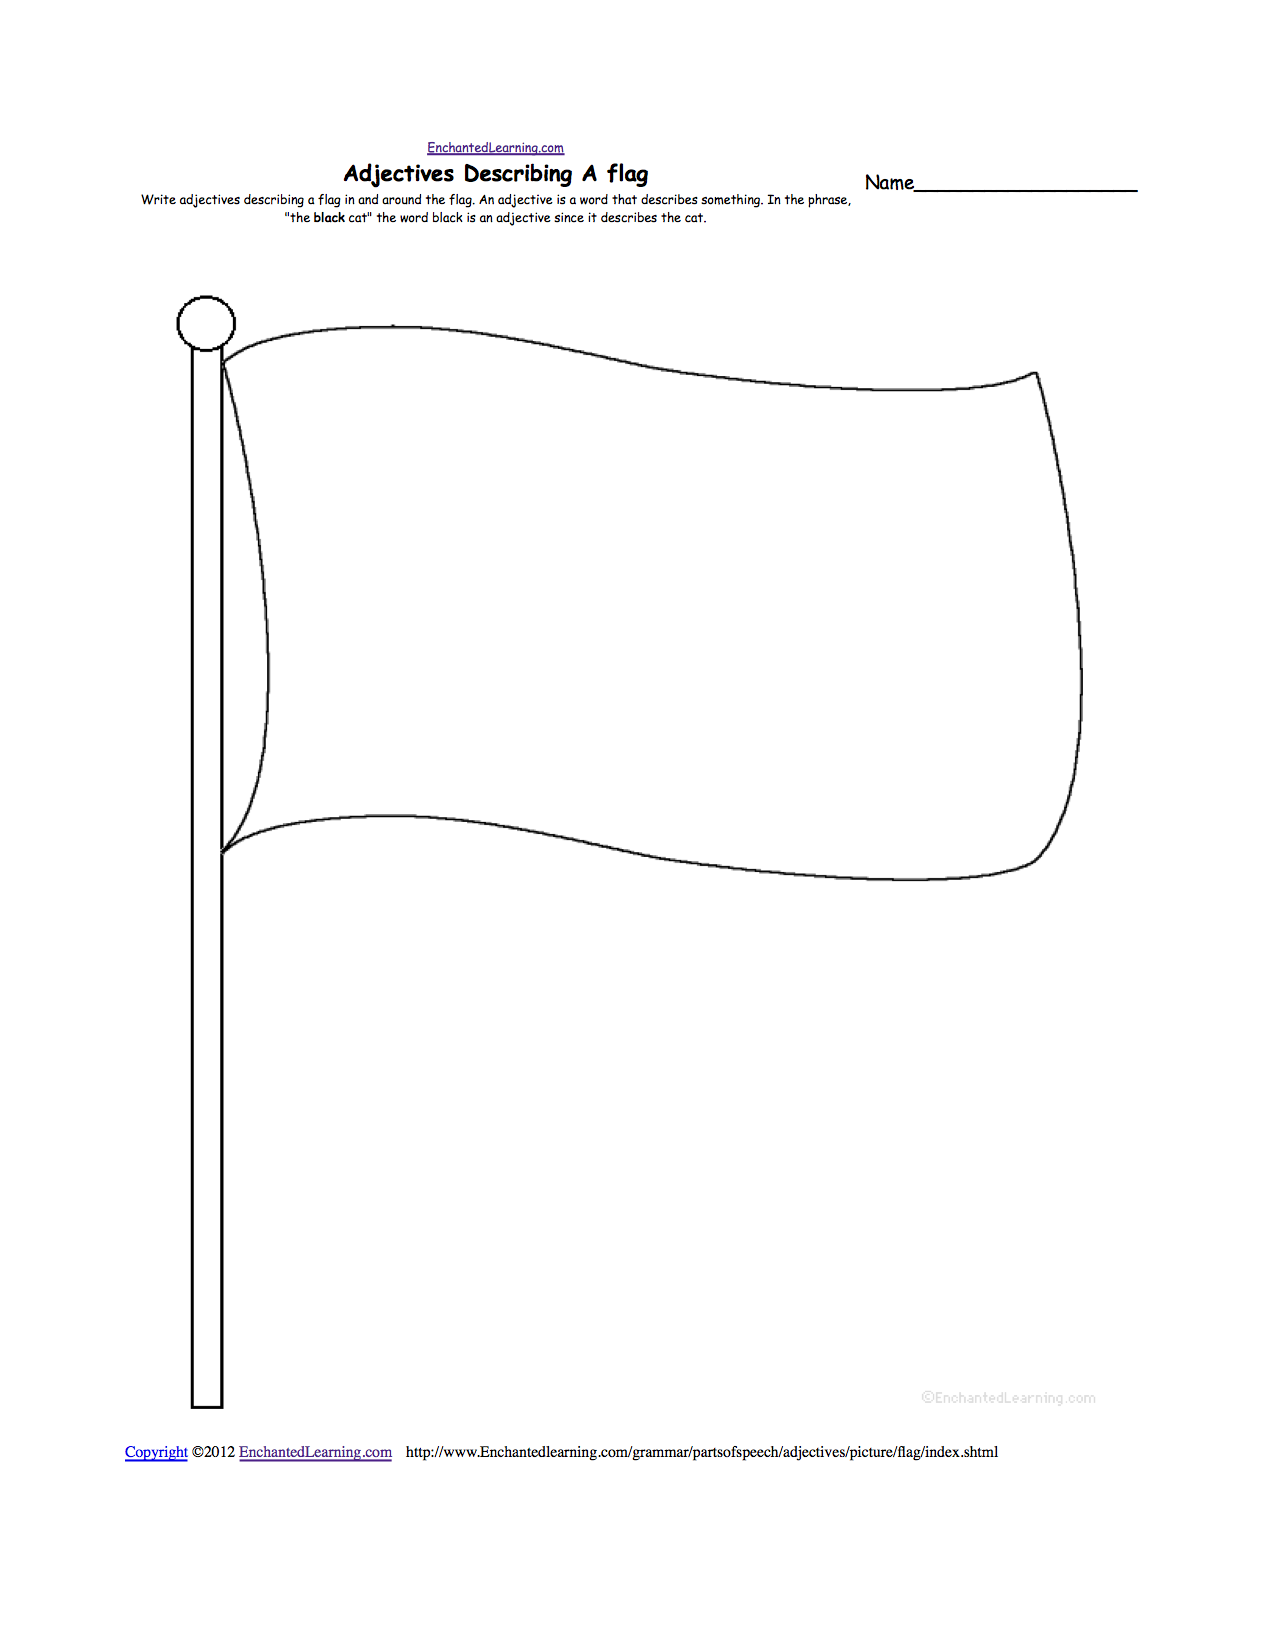 Blank American Flag Worksheet Image